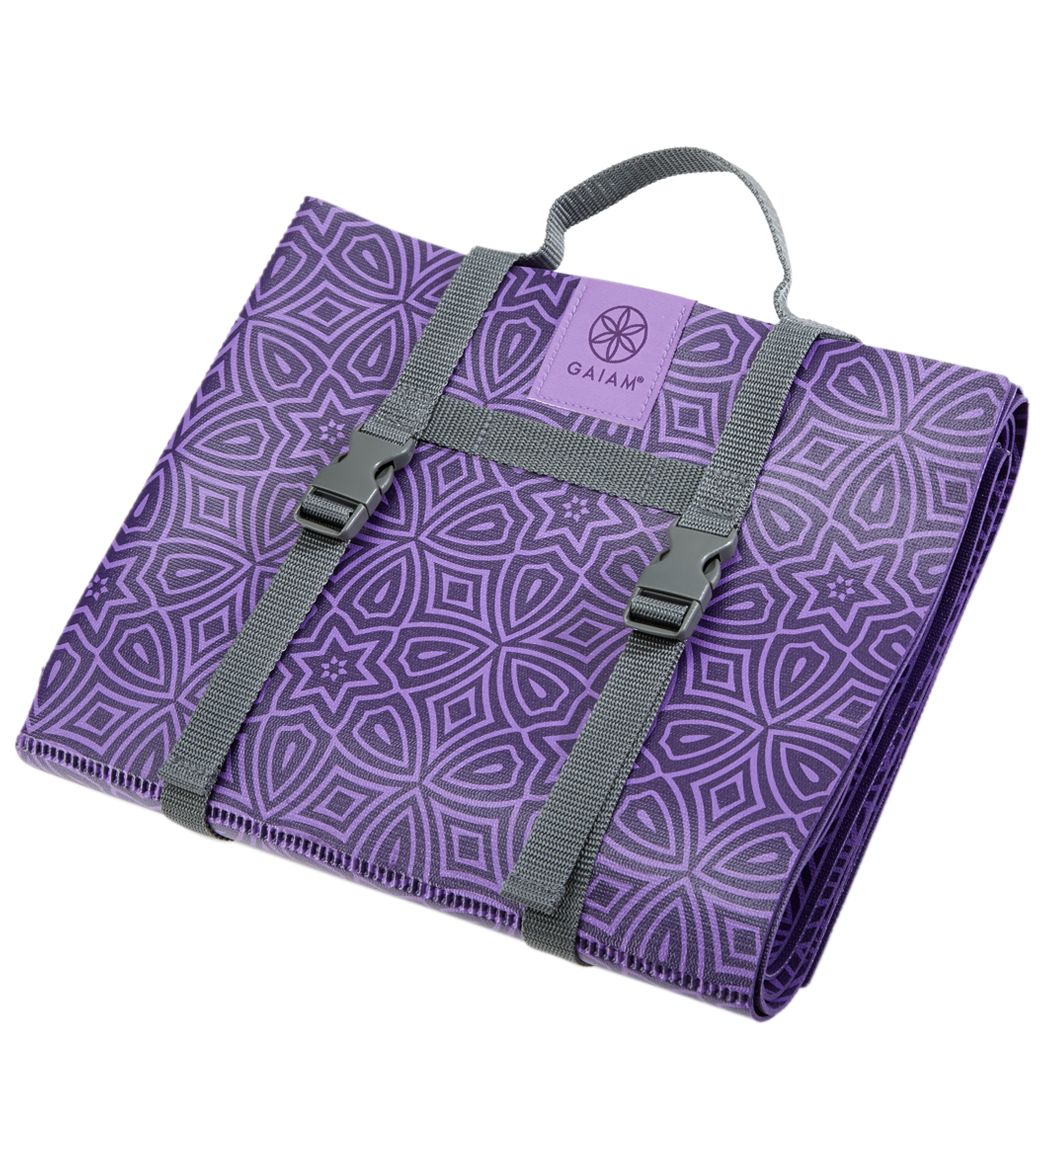 https://www.everydayyoga.com/cdn/shop/products/1741651804195-purple-1a.jpg?v=1561973351